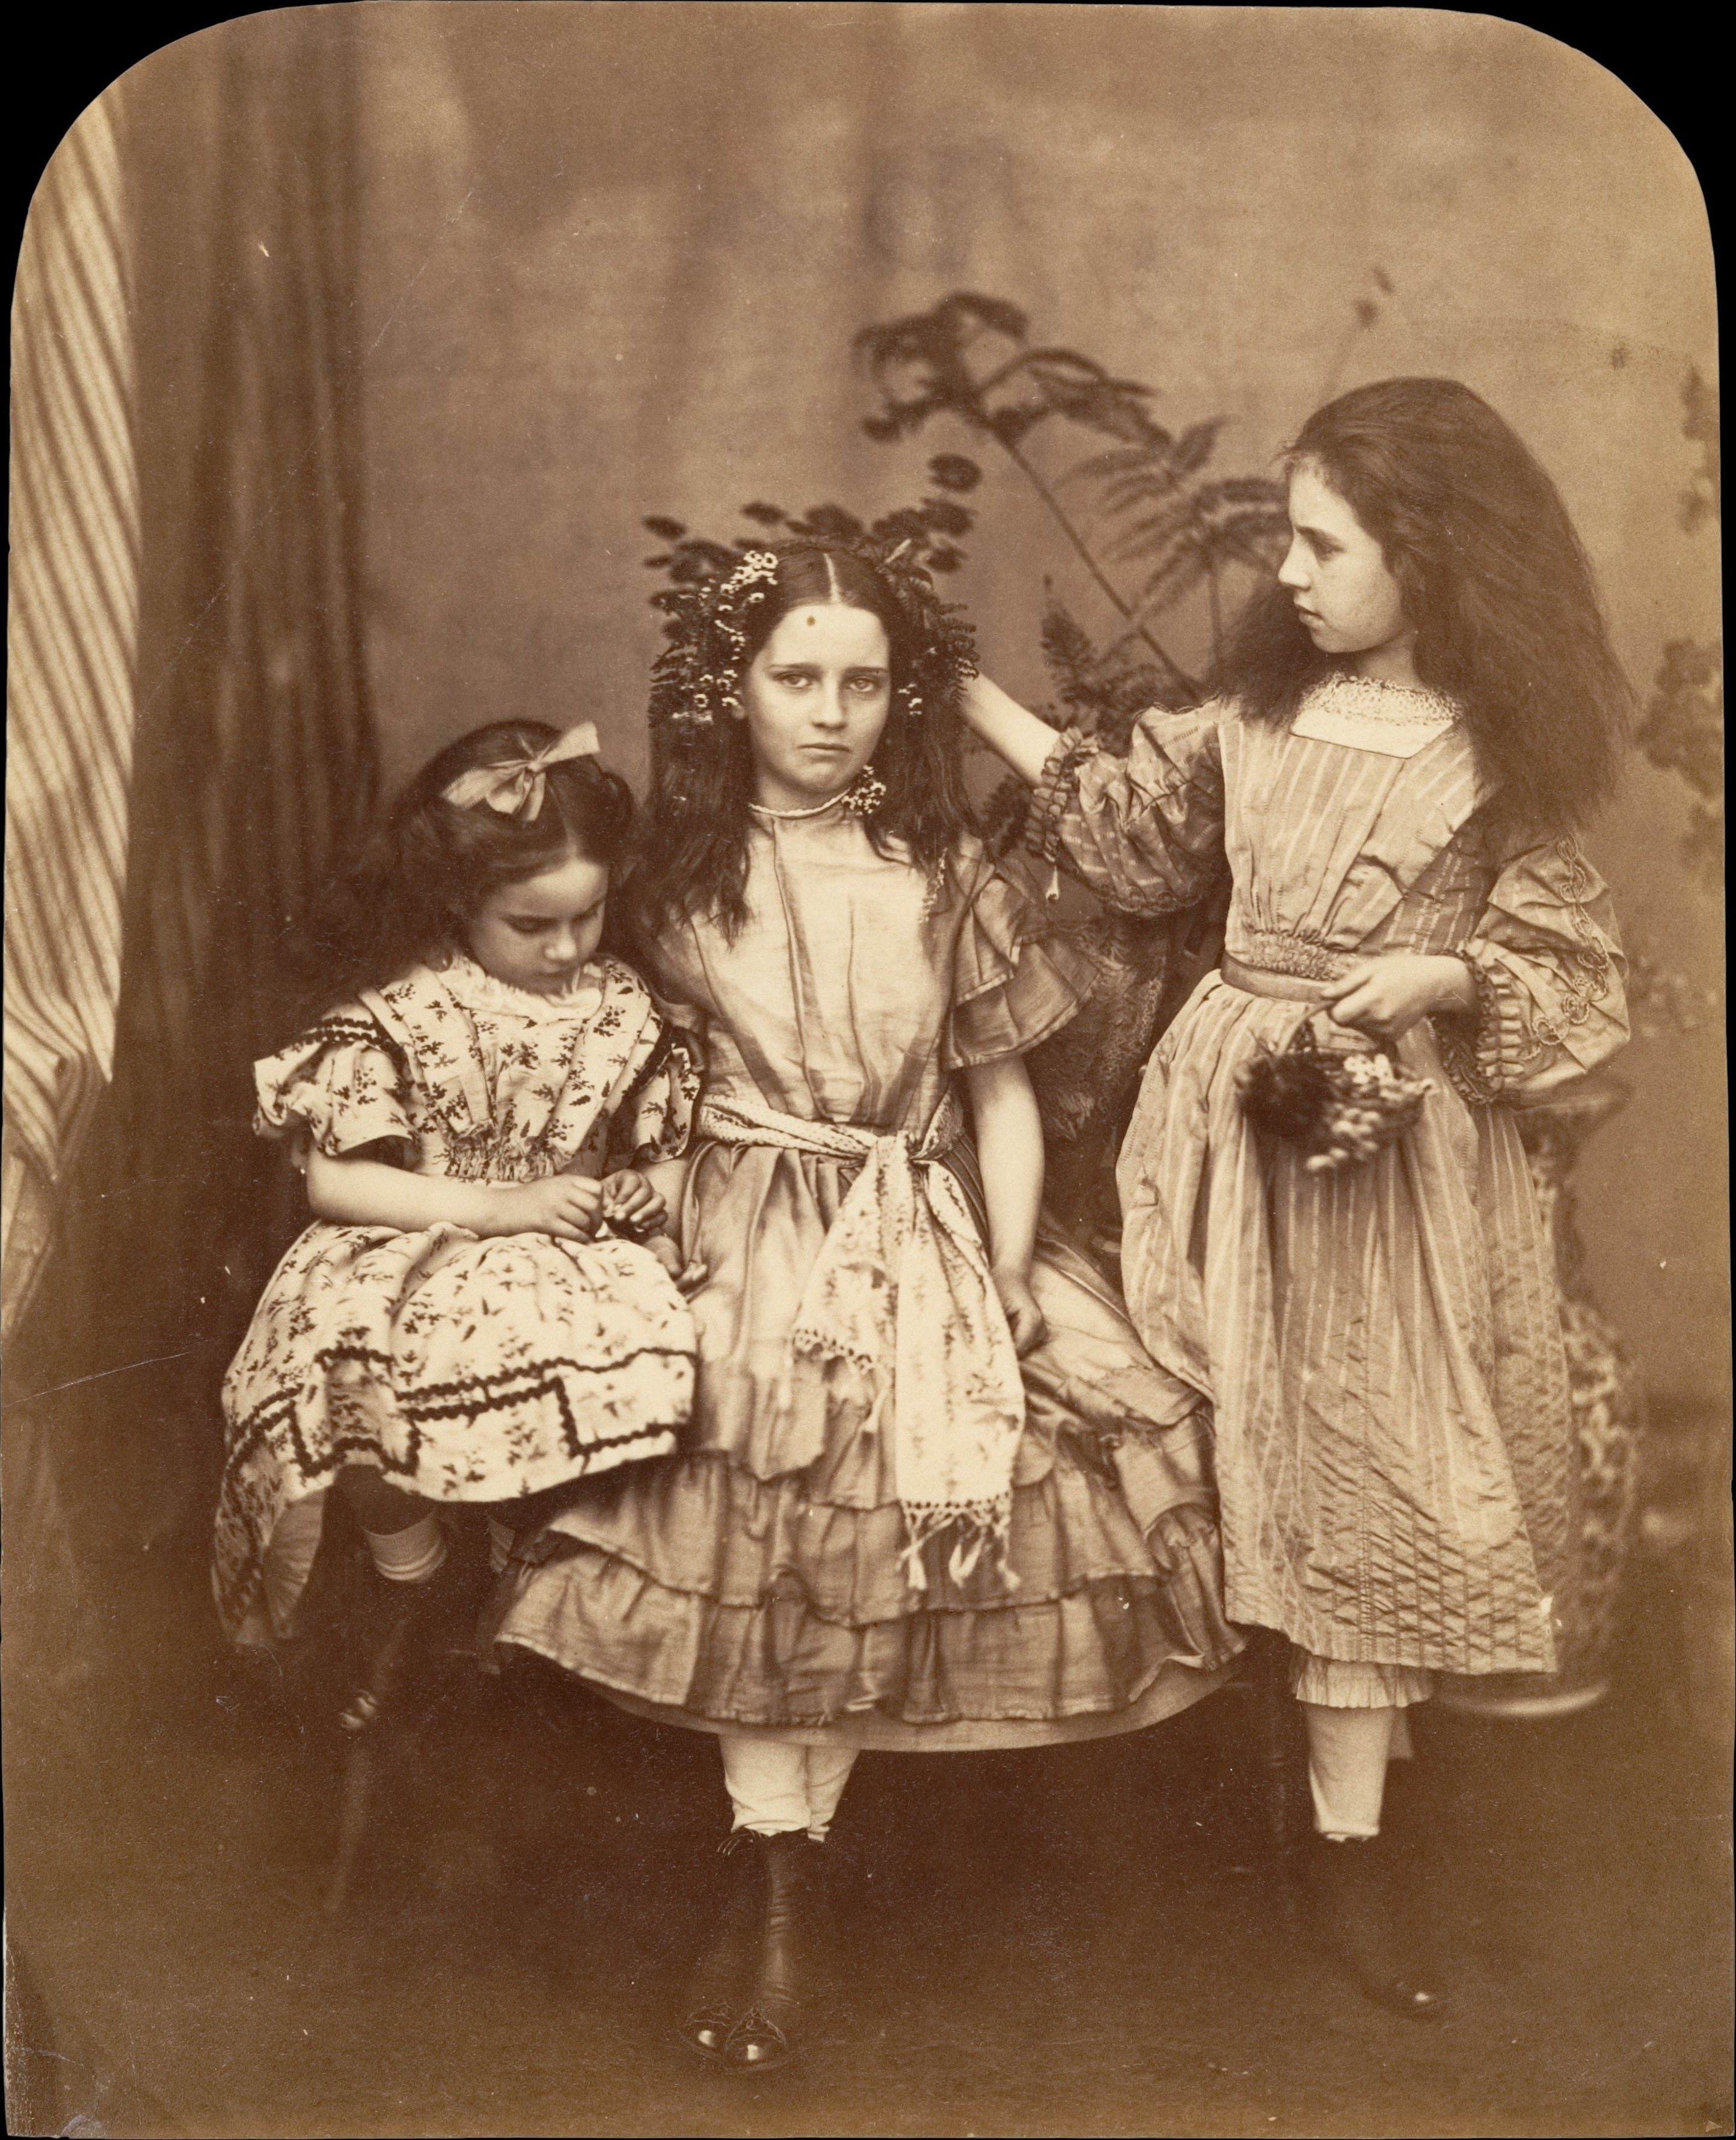 Флора Ранкин, Ирэн МакДональд и Мэри Джозефина МакДональд, 1863. Автор Льюис Кэрролл